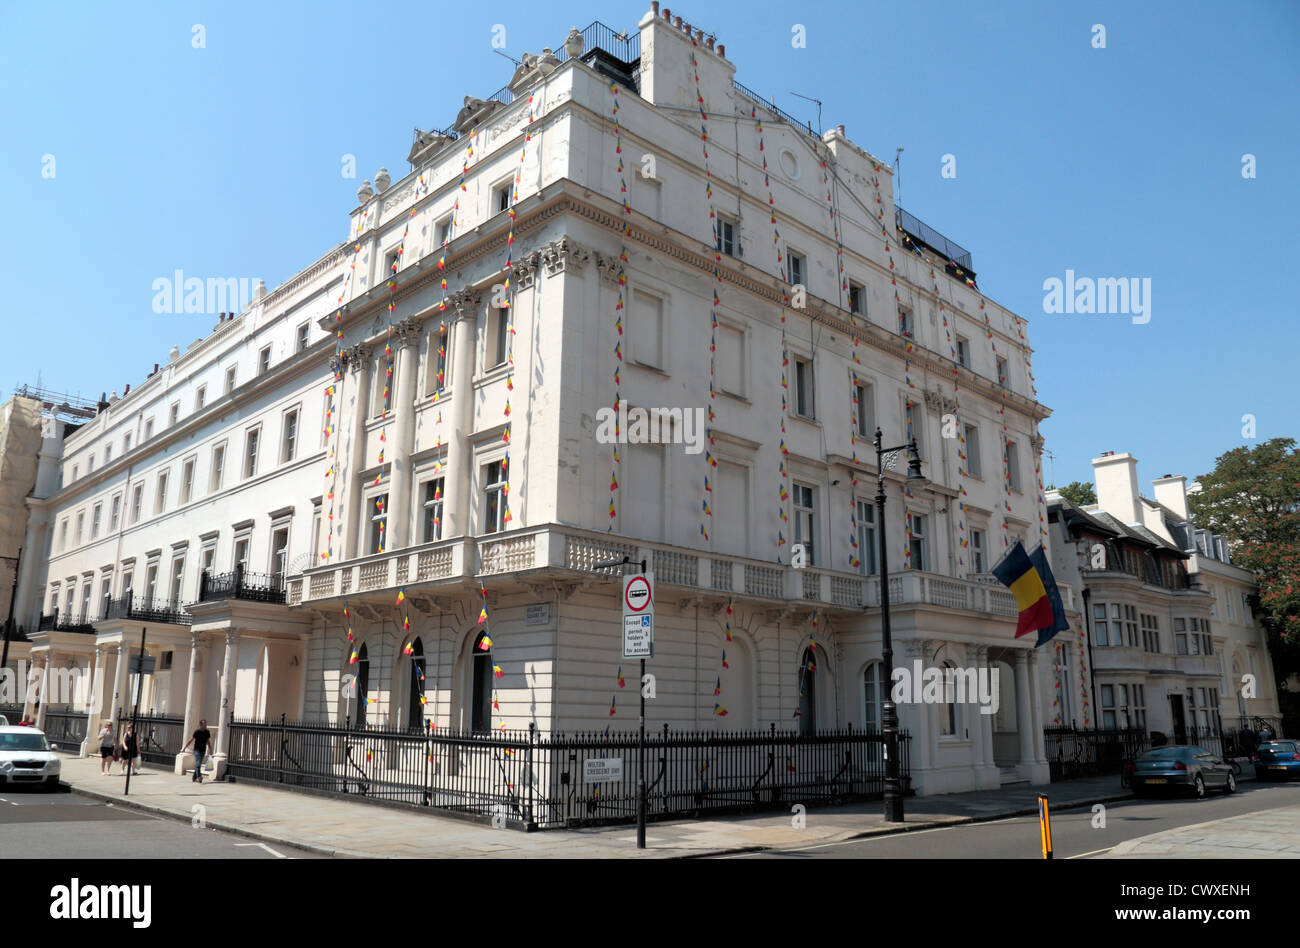 Das rumänische Kulturinstitut, Belgrave Square, Belgravia, London, UK. Stockfoto